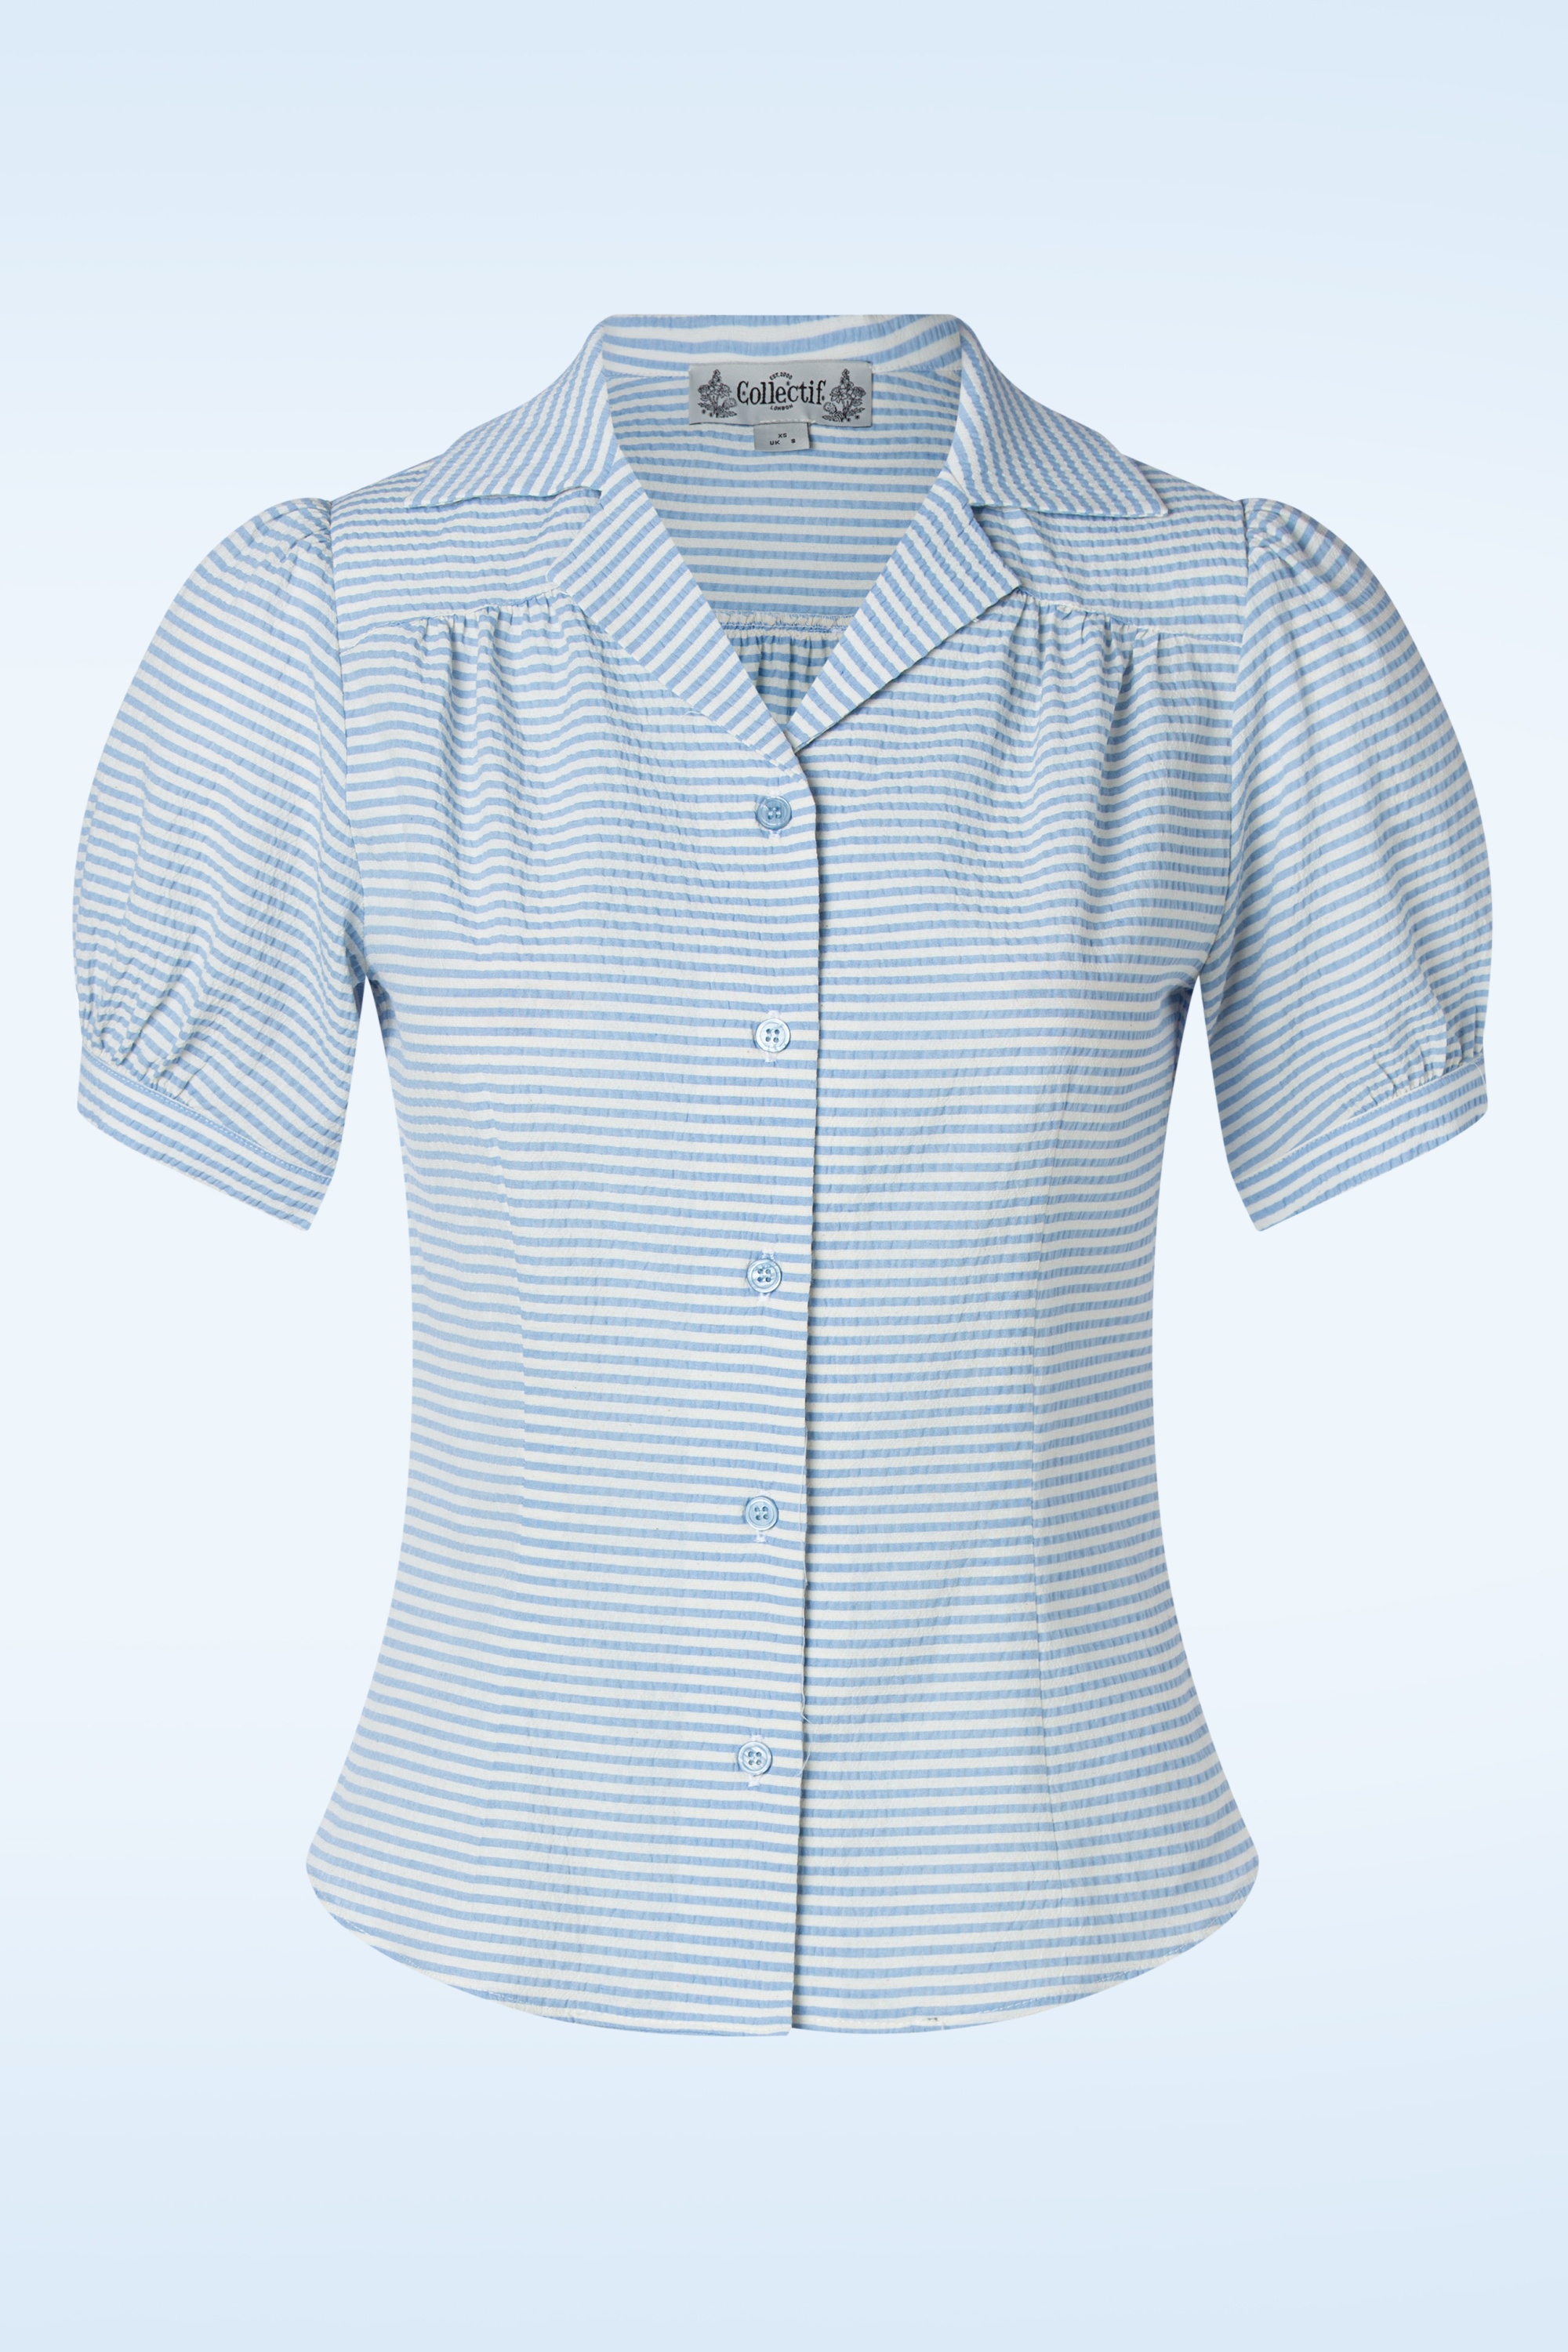 Collectif Clothing - Luana gestreepte blouse in wit en blauw